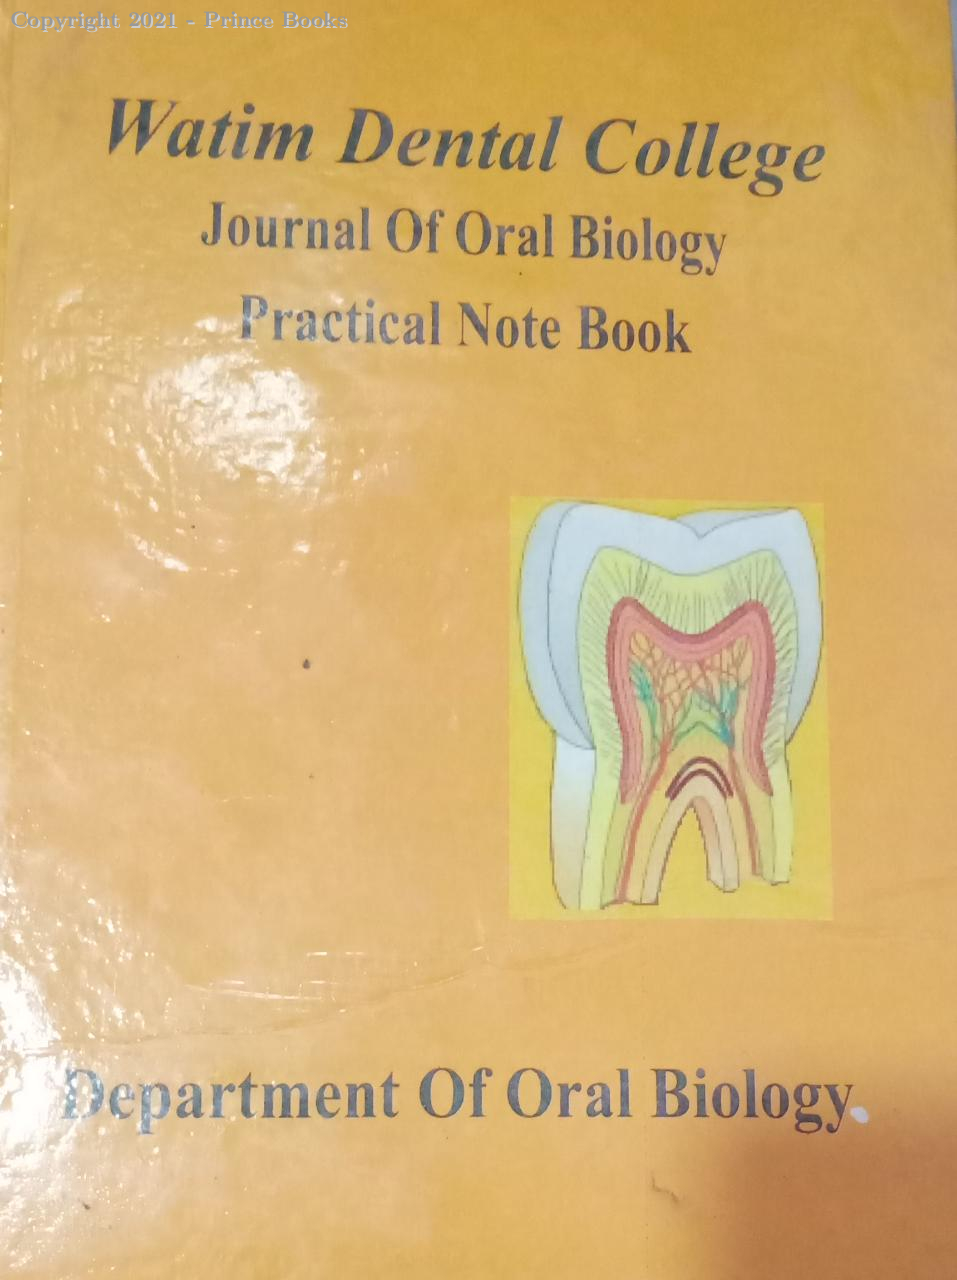 watim dental college journal of oral biology practical note book